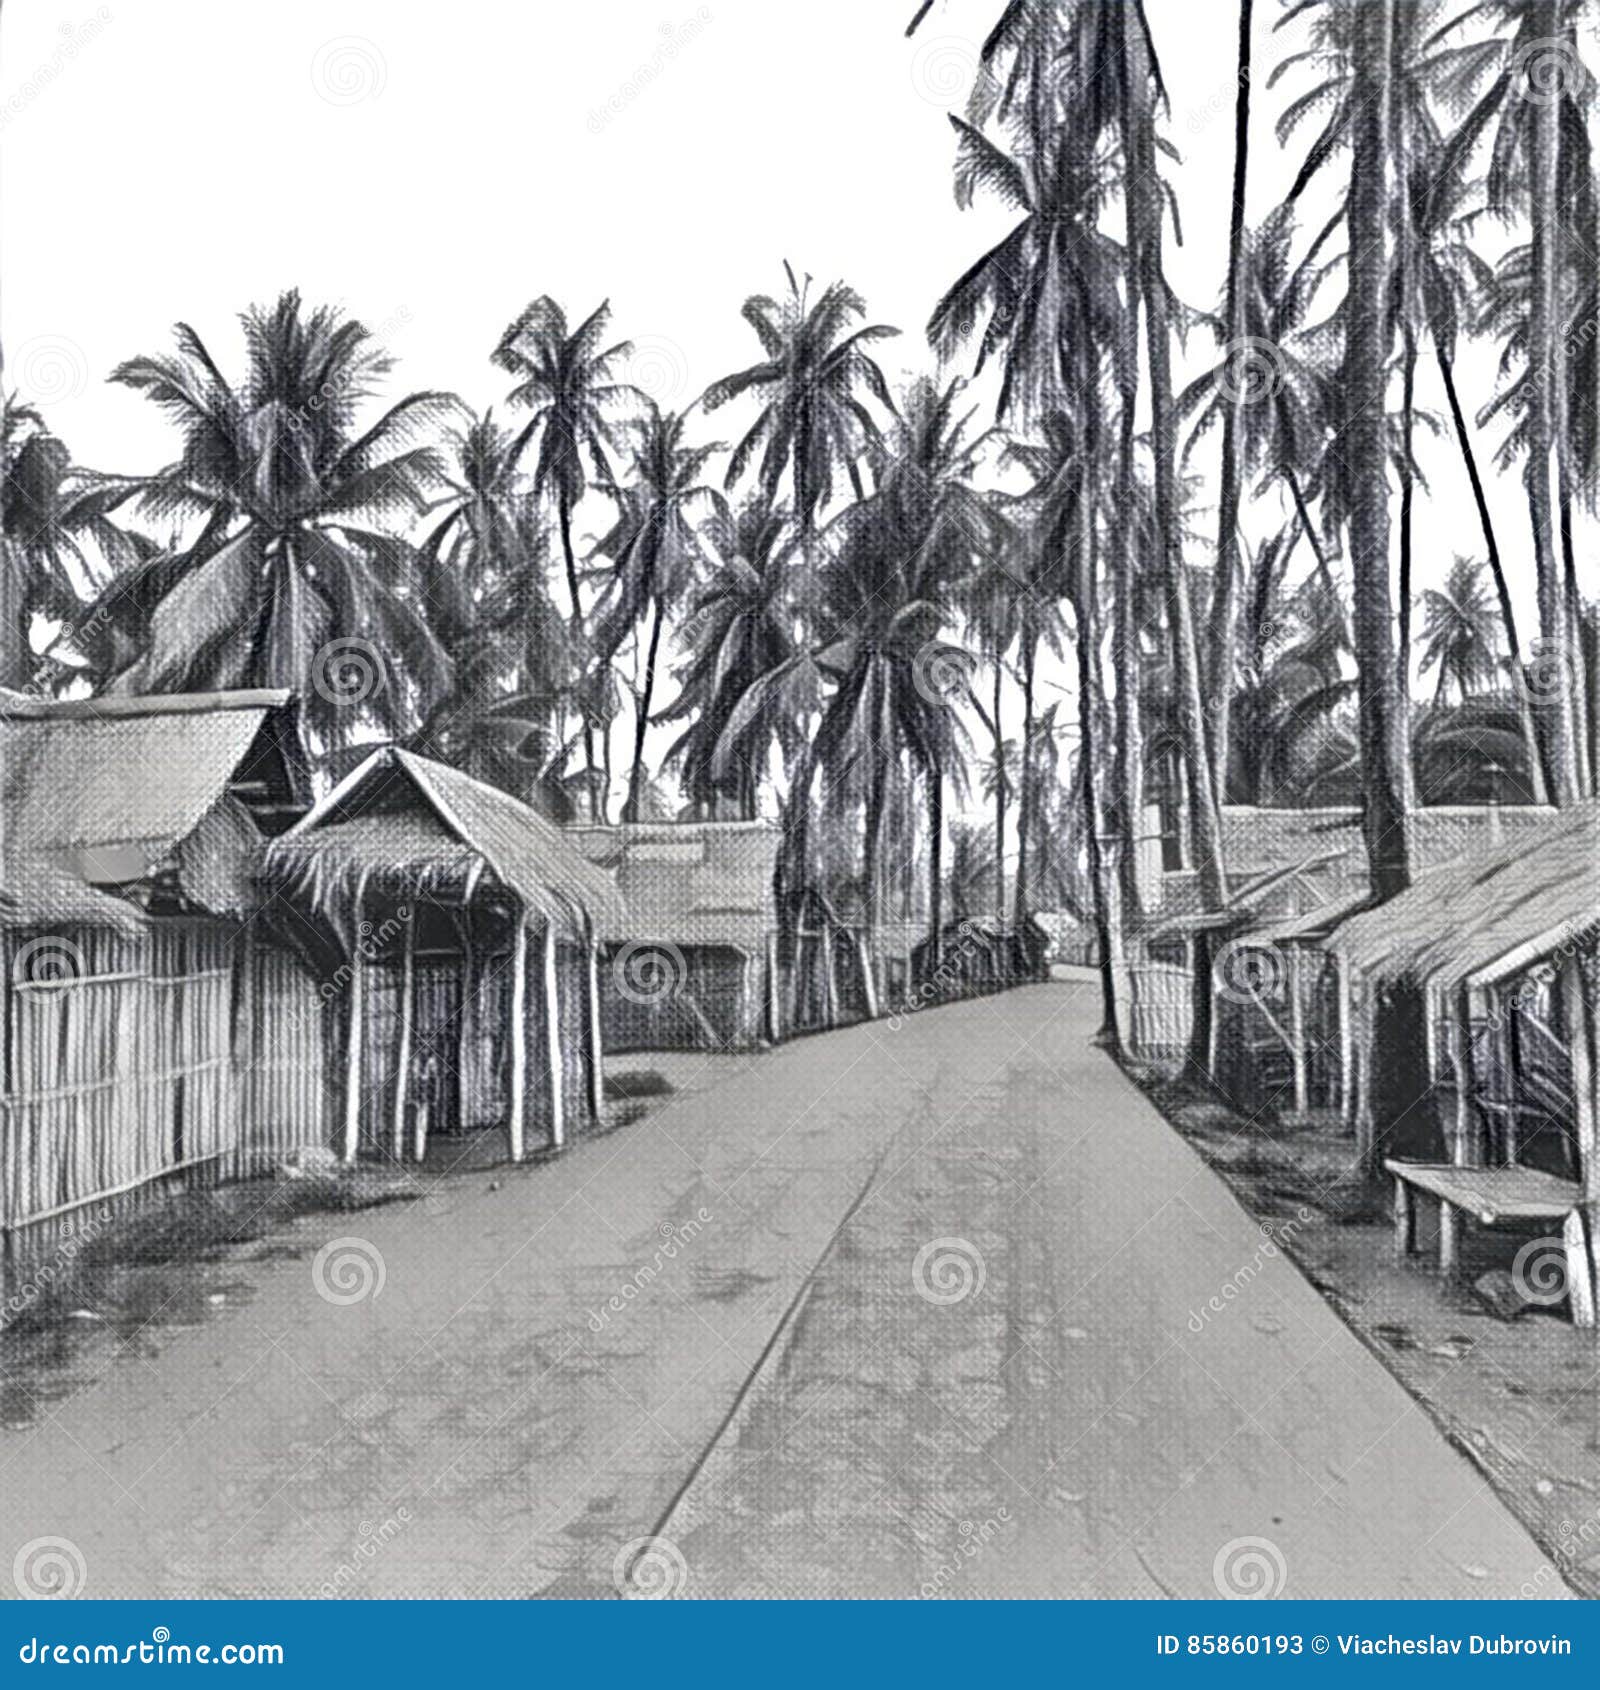 digital  - the village in jungle. traditional filipino village pencil sketch